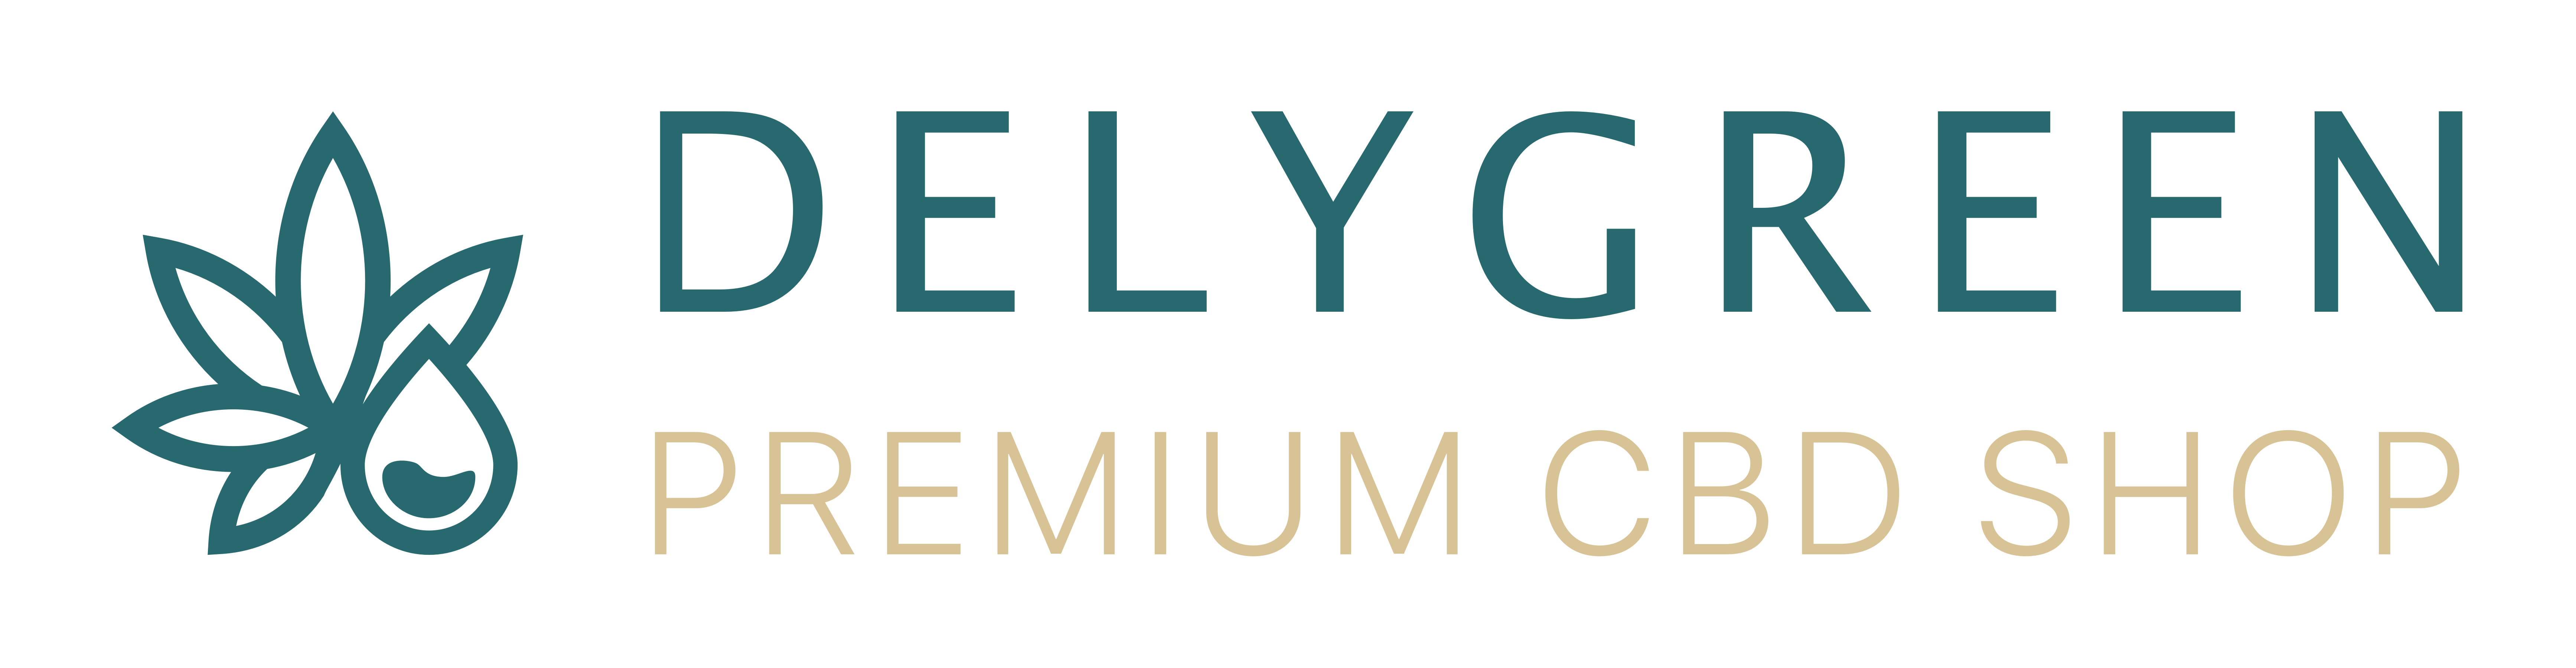 Delygreen Premium CBD Shop